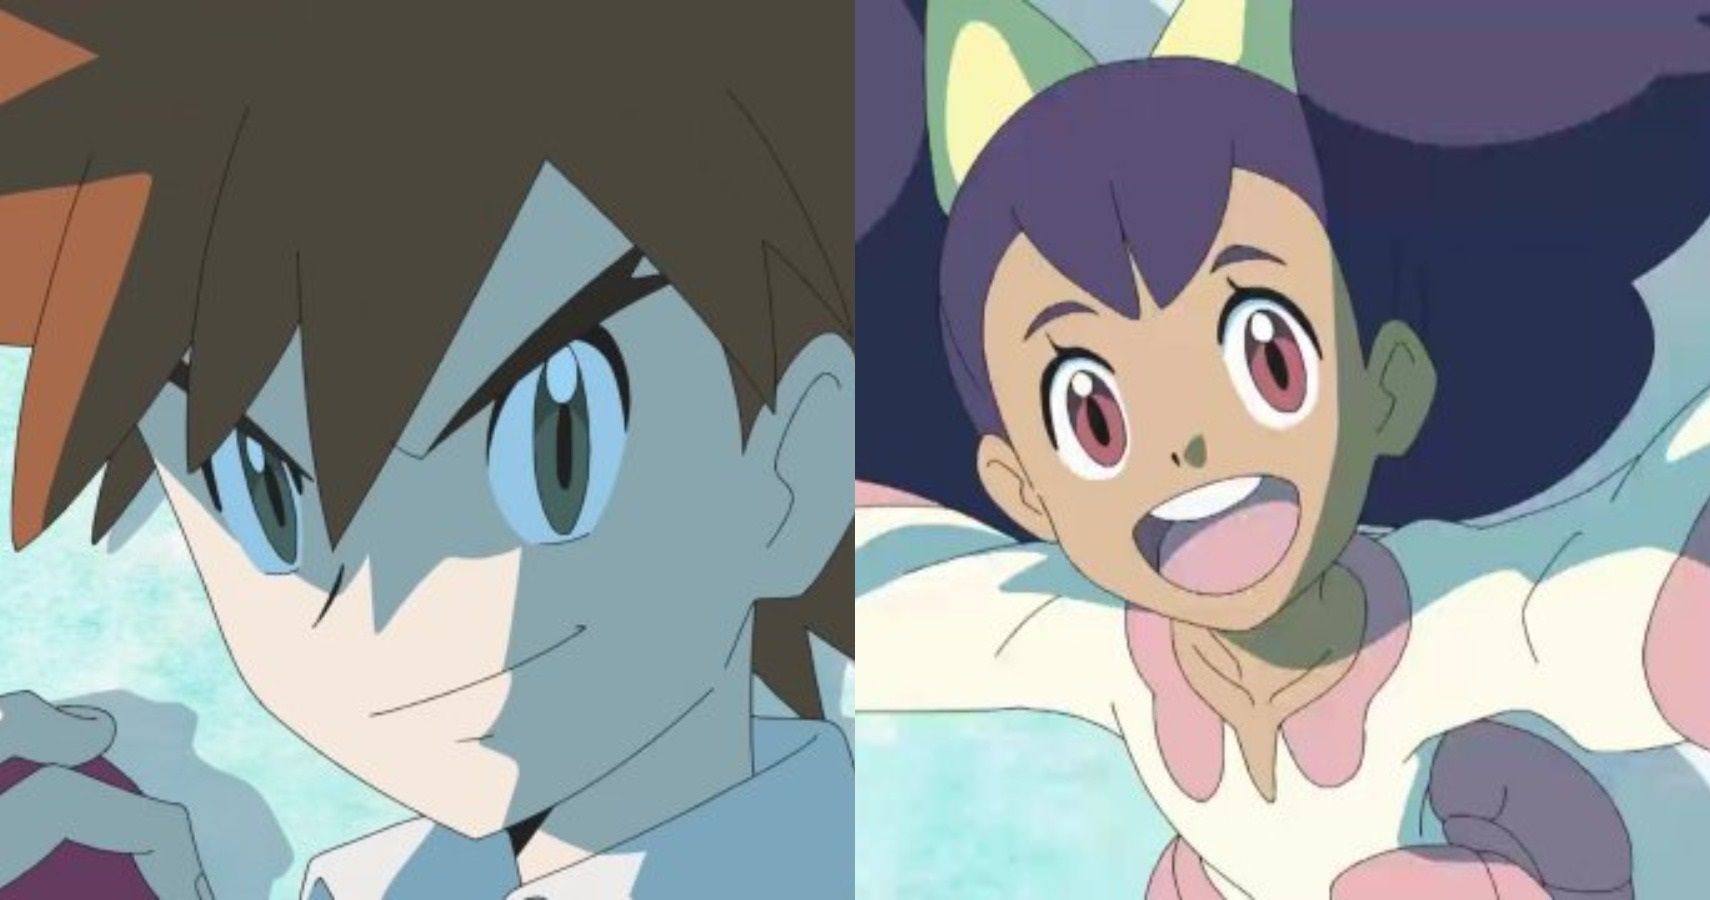 Gary Carvalho esteve aqui! Nova abertura japonesa de Jornadas Pokémon  revela retorno de Gary e Iris ao anime - Crunchyroll Notícias